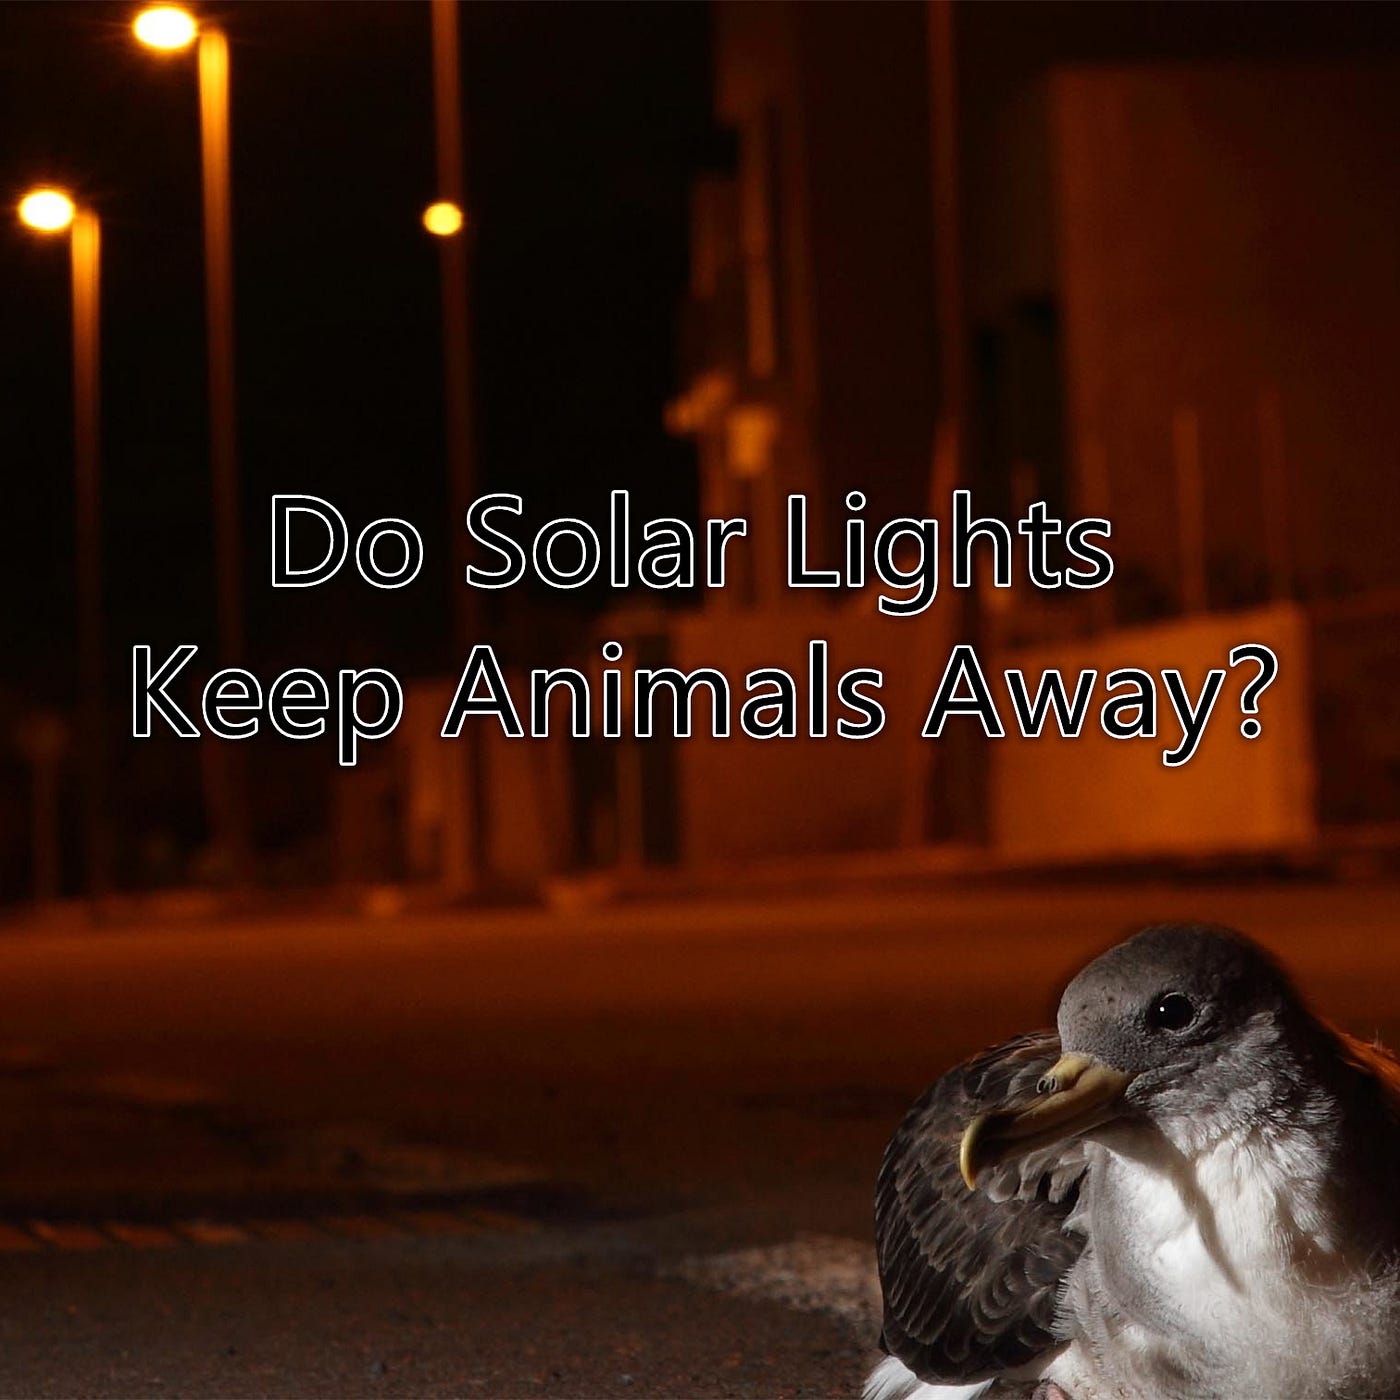 Do Solar Lights Keep Animals Away | by Eneradar | Medium